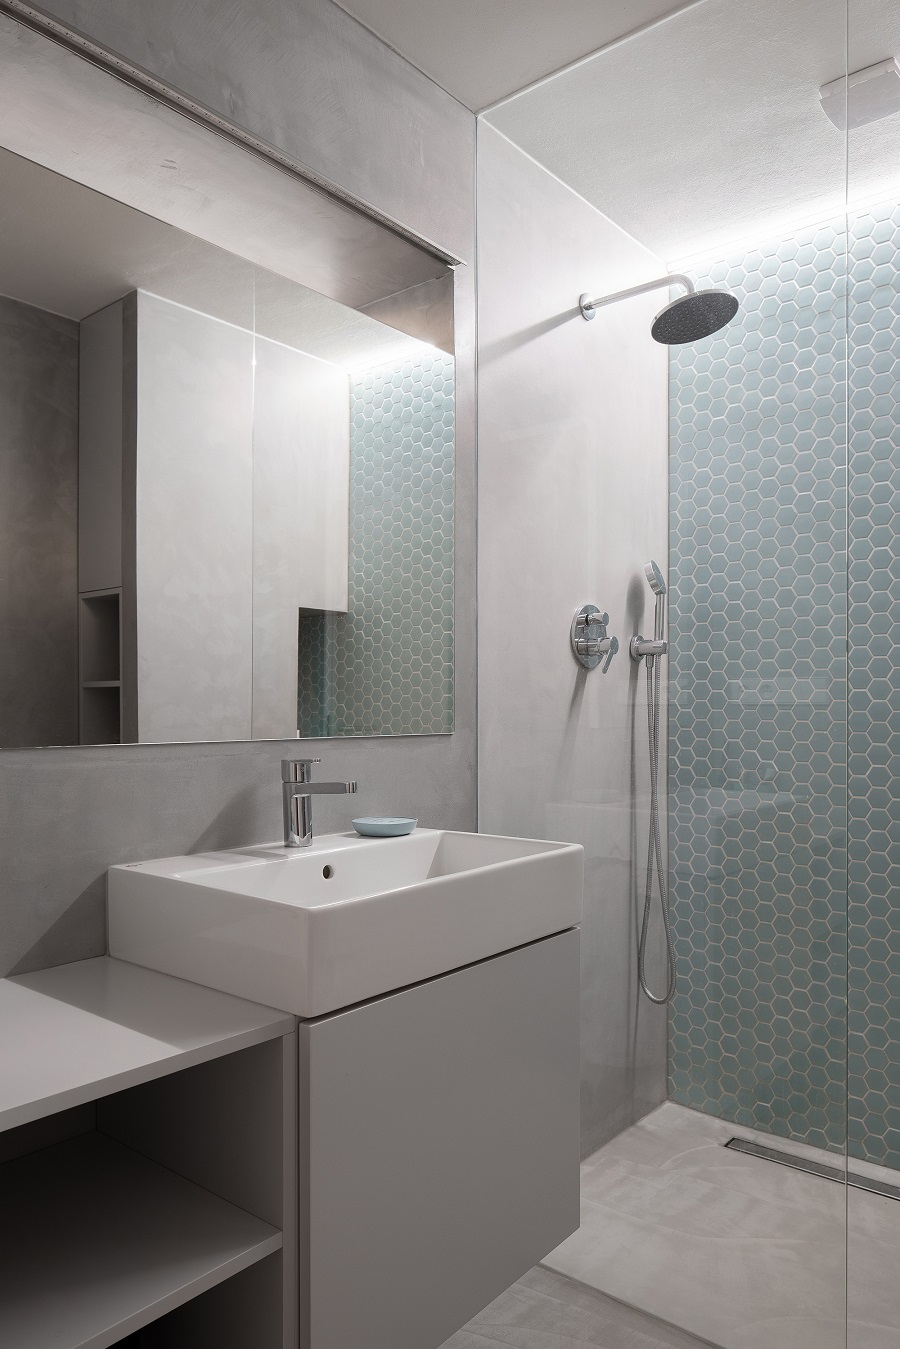 Sivomodrá kúpeľňa s bielym umývadlom a bielym nábytkom, sprchovací kút so sprchou zhora